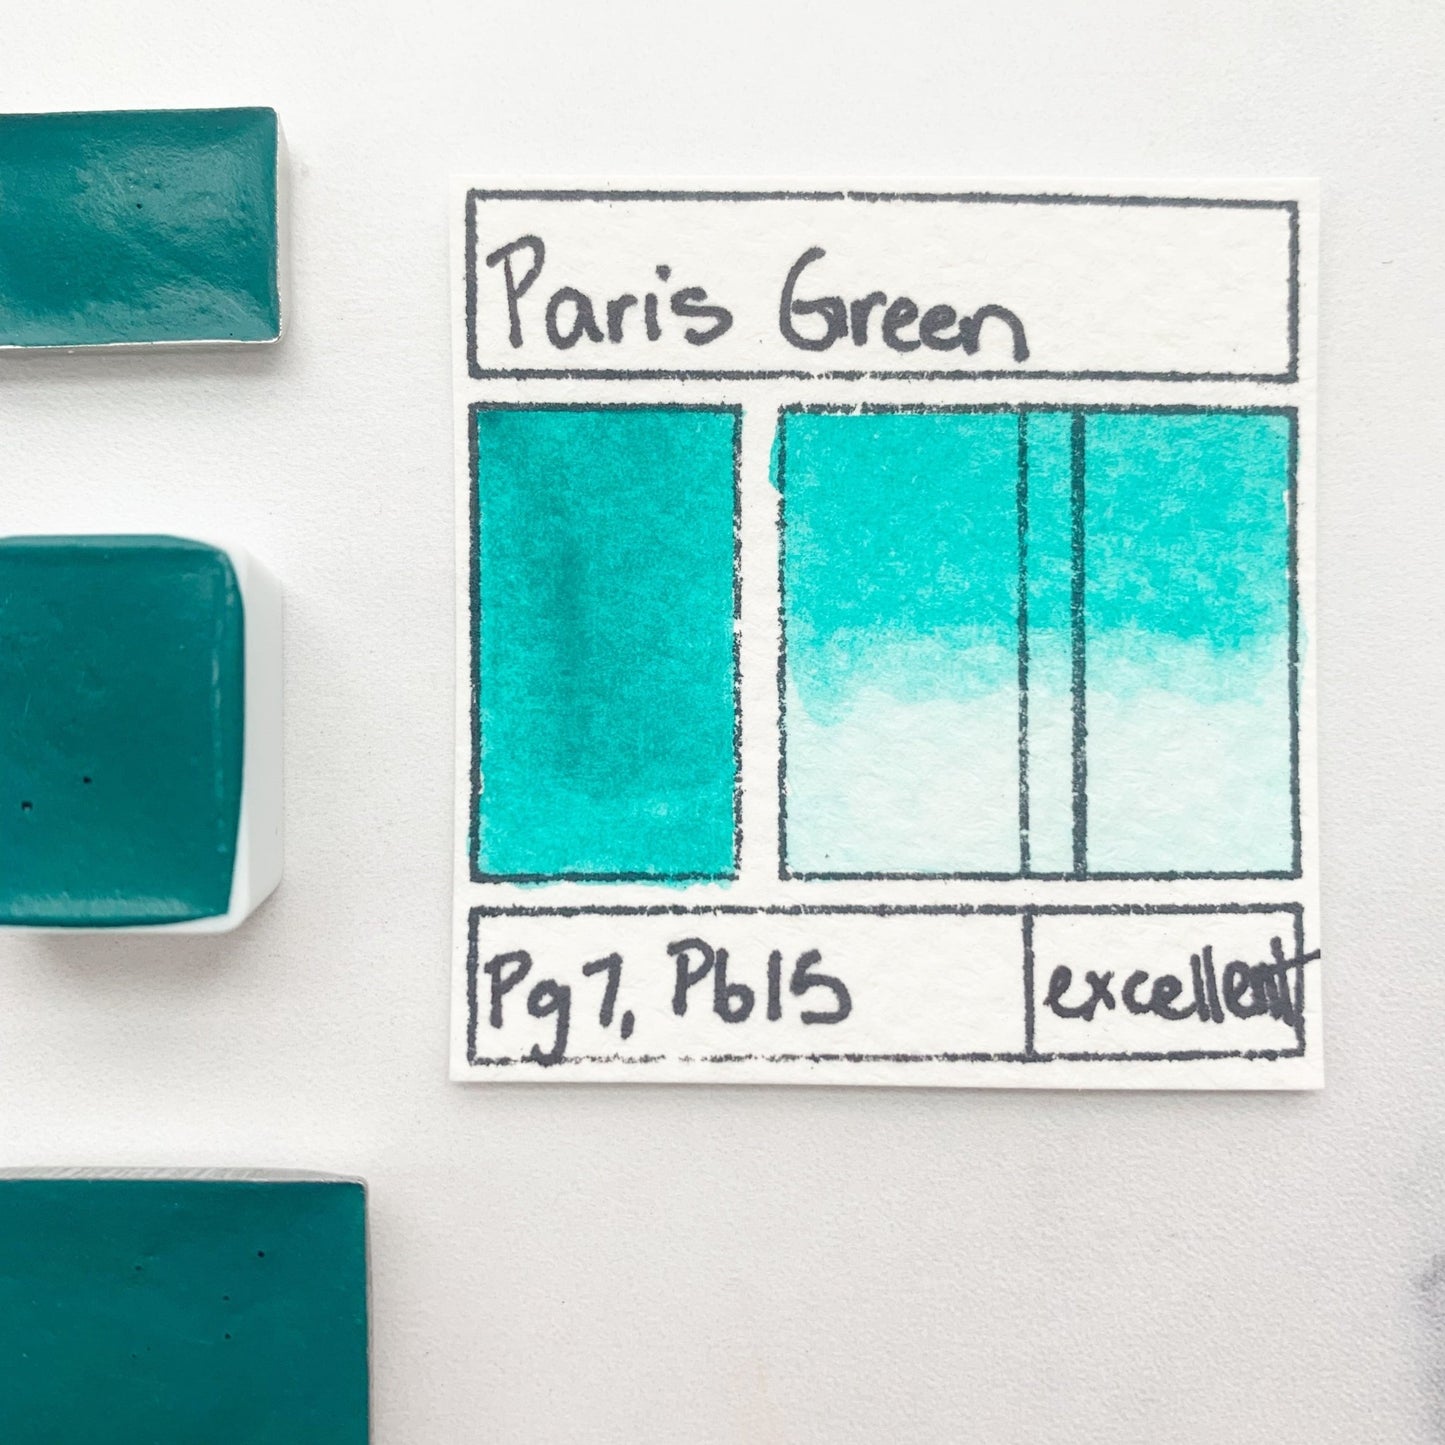 Paris Green. Half pan, full pan or bottle cap of handmade watercolor paint